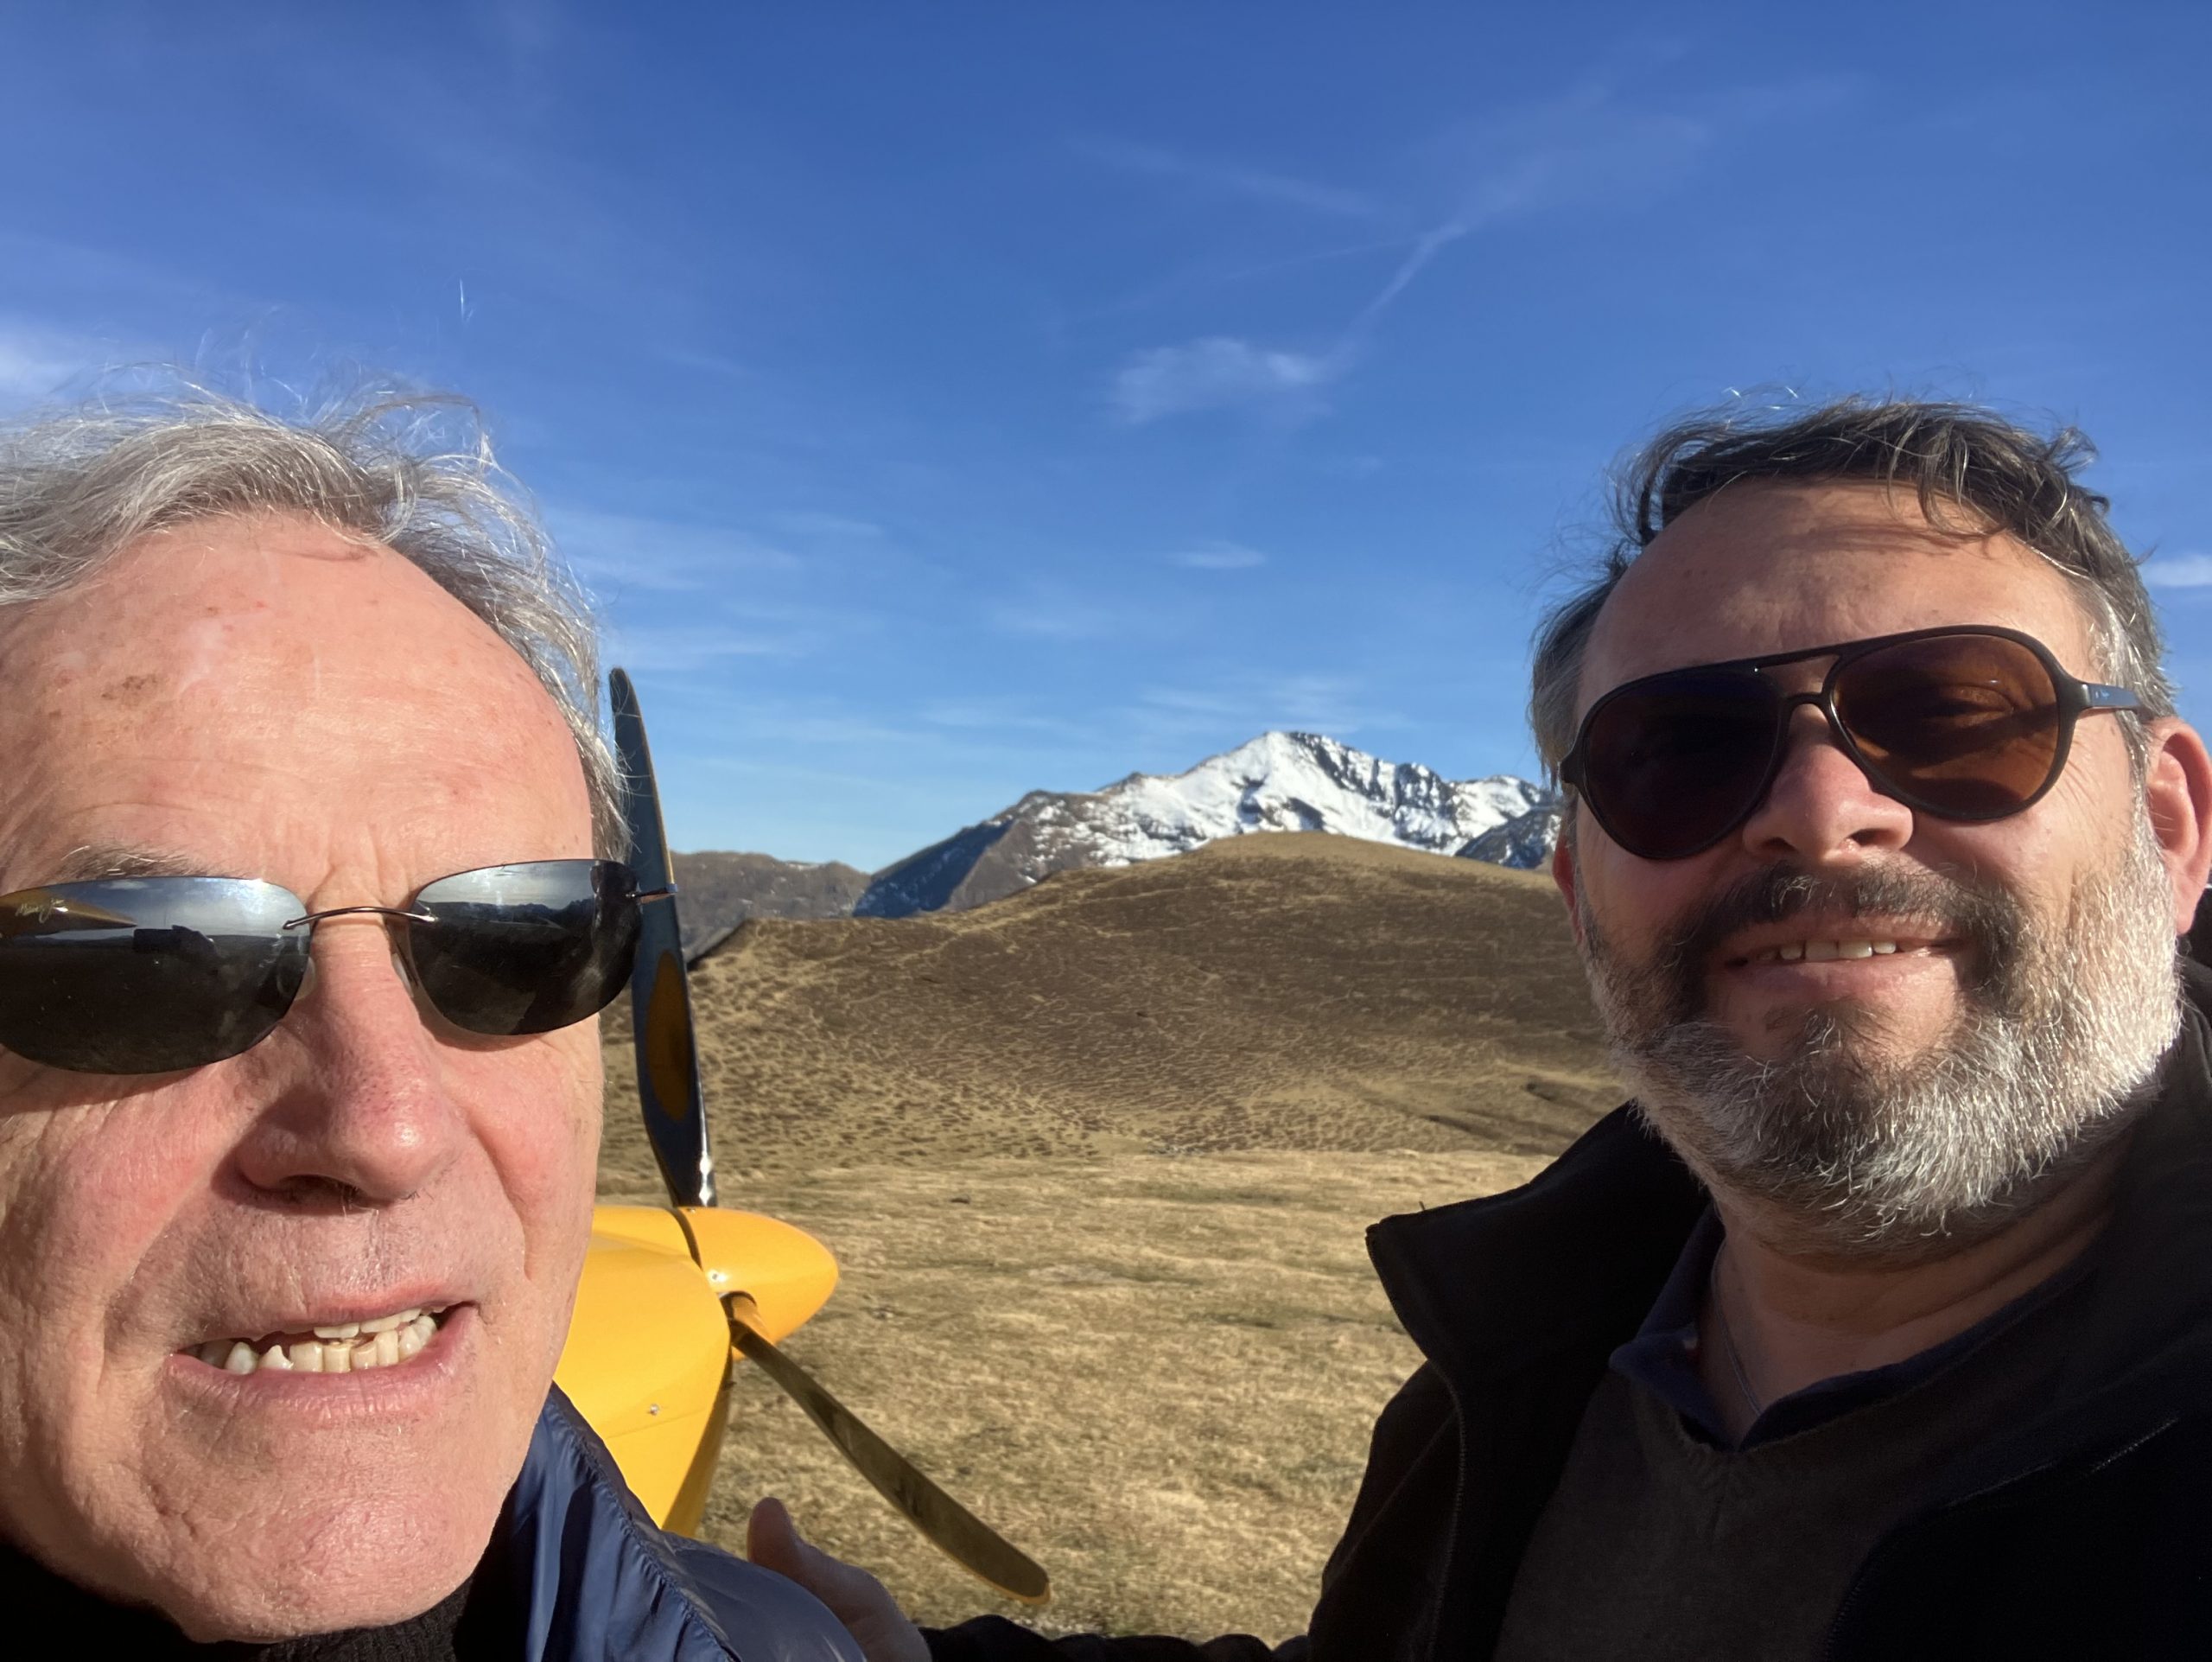 Selfie de Jean-Claude et Martial, avec en fond l'hélice de l'avion et la montagne à Hautacam sur ciel bleu dégagé.